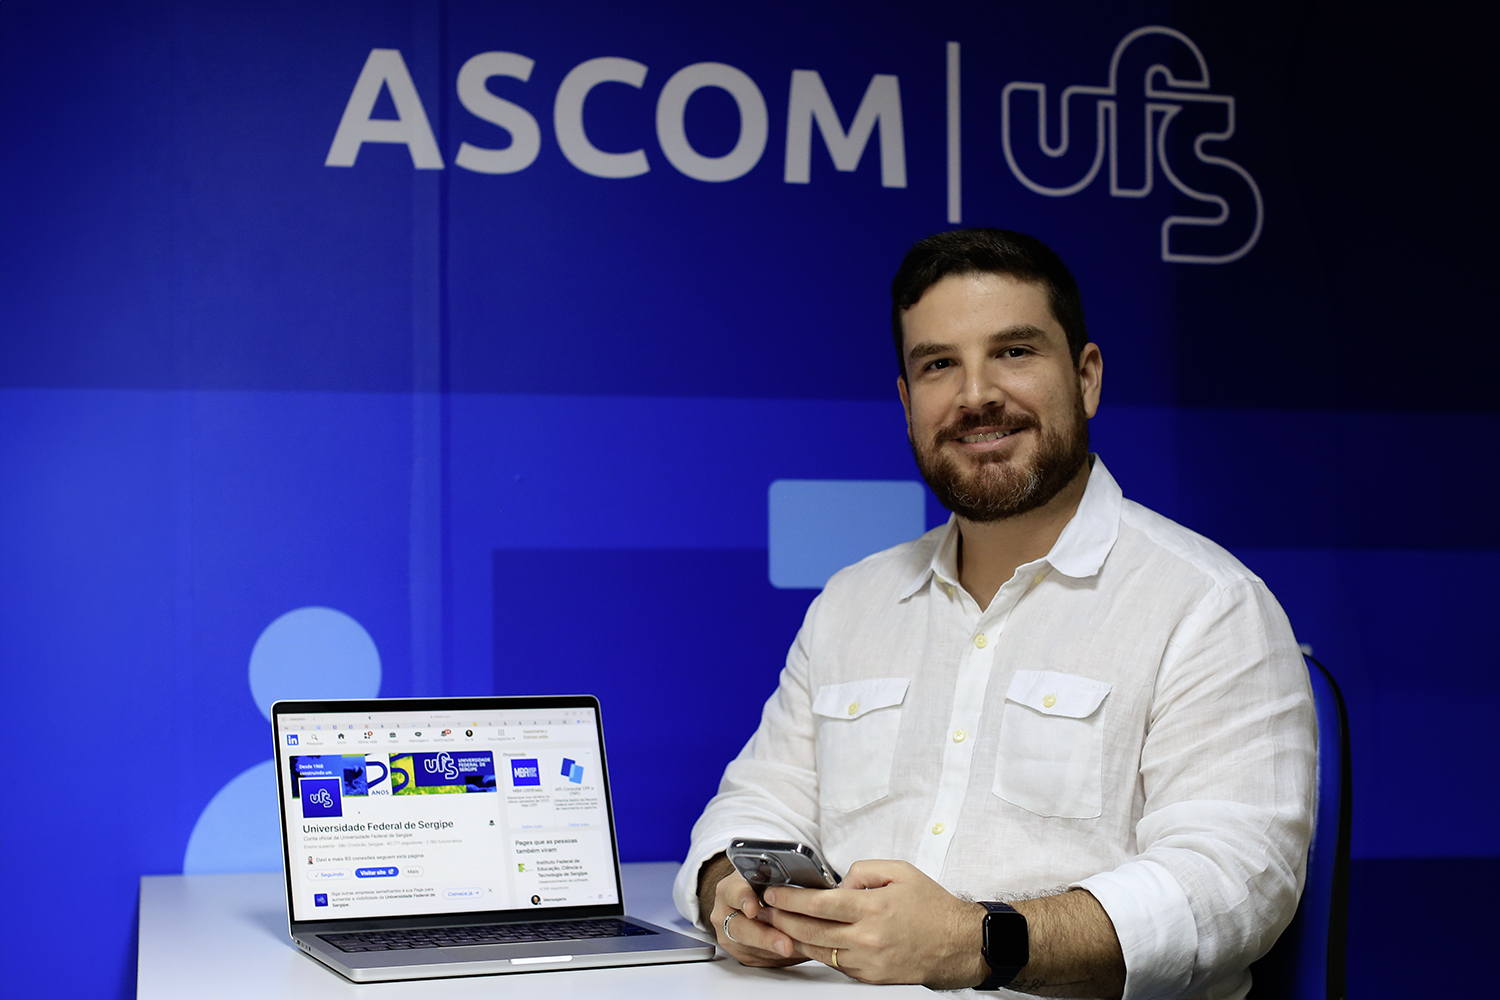 Vitor Belém, coordenador da Ascom UFS. Foto: Adilson Andrade / Ascom UFS.